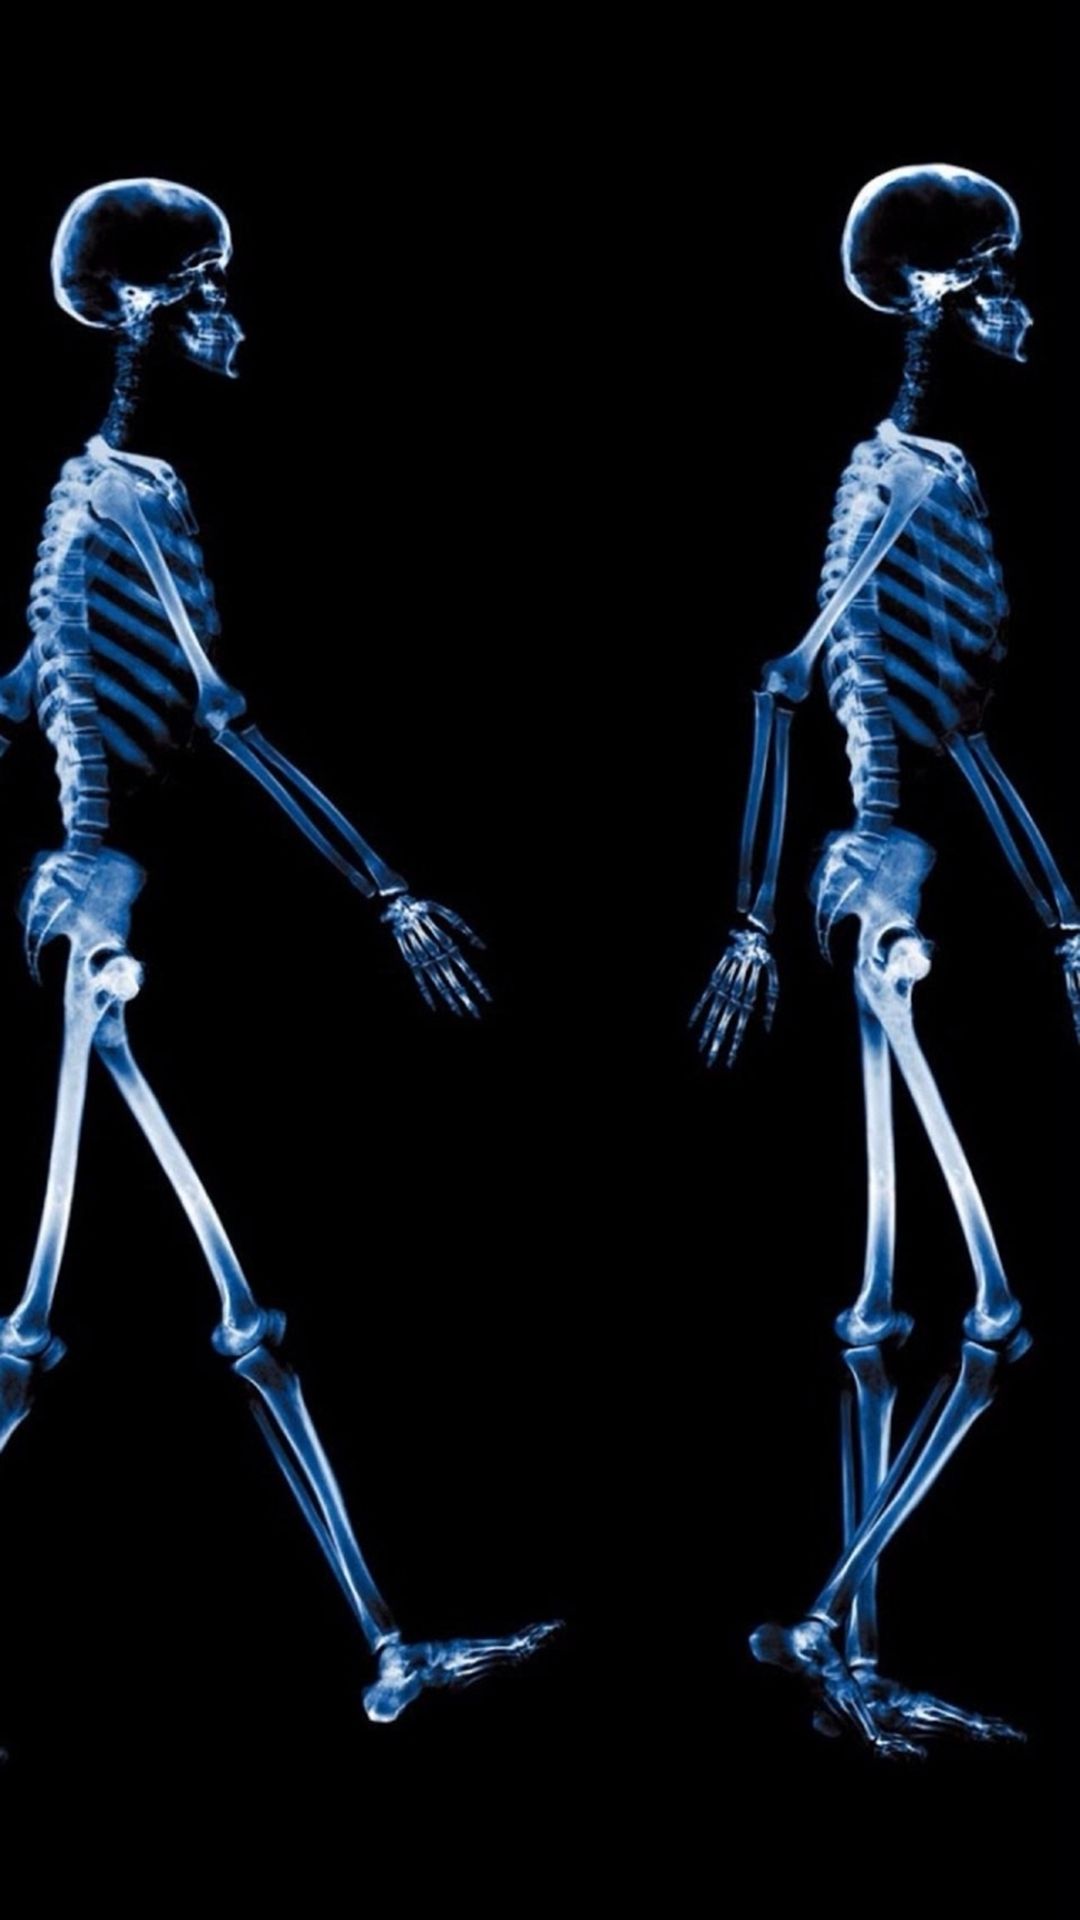 Abstract Xray Walking Human Skeleton Dark iPhone Wallpaper